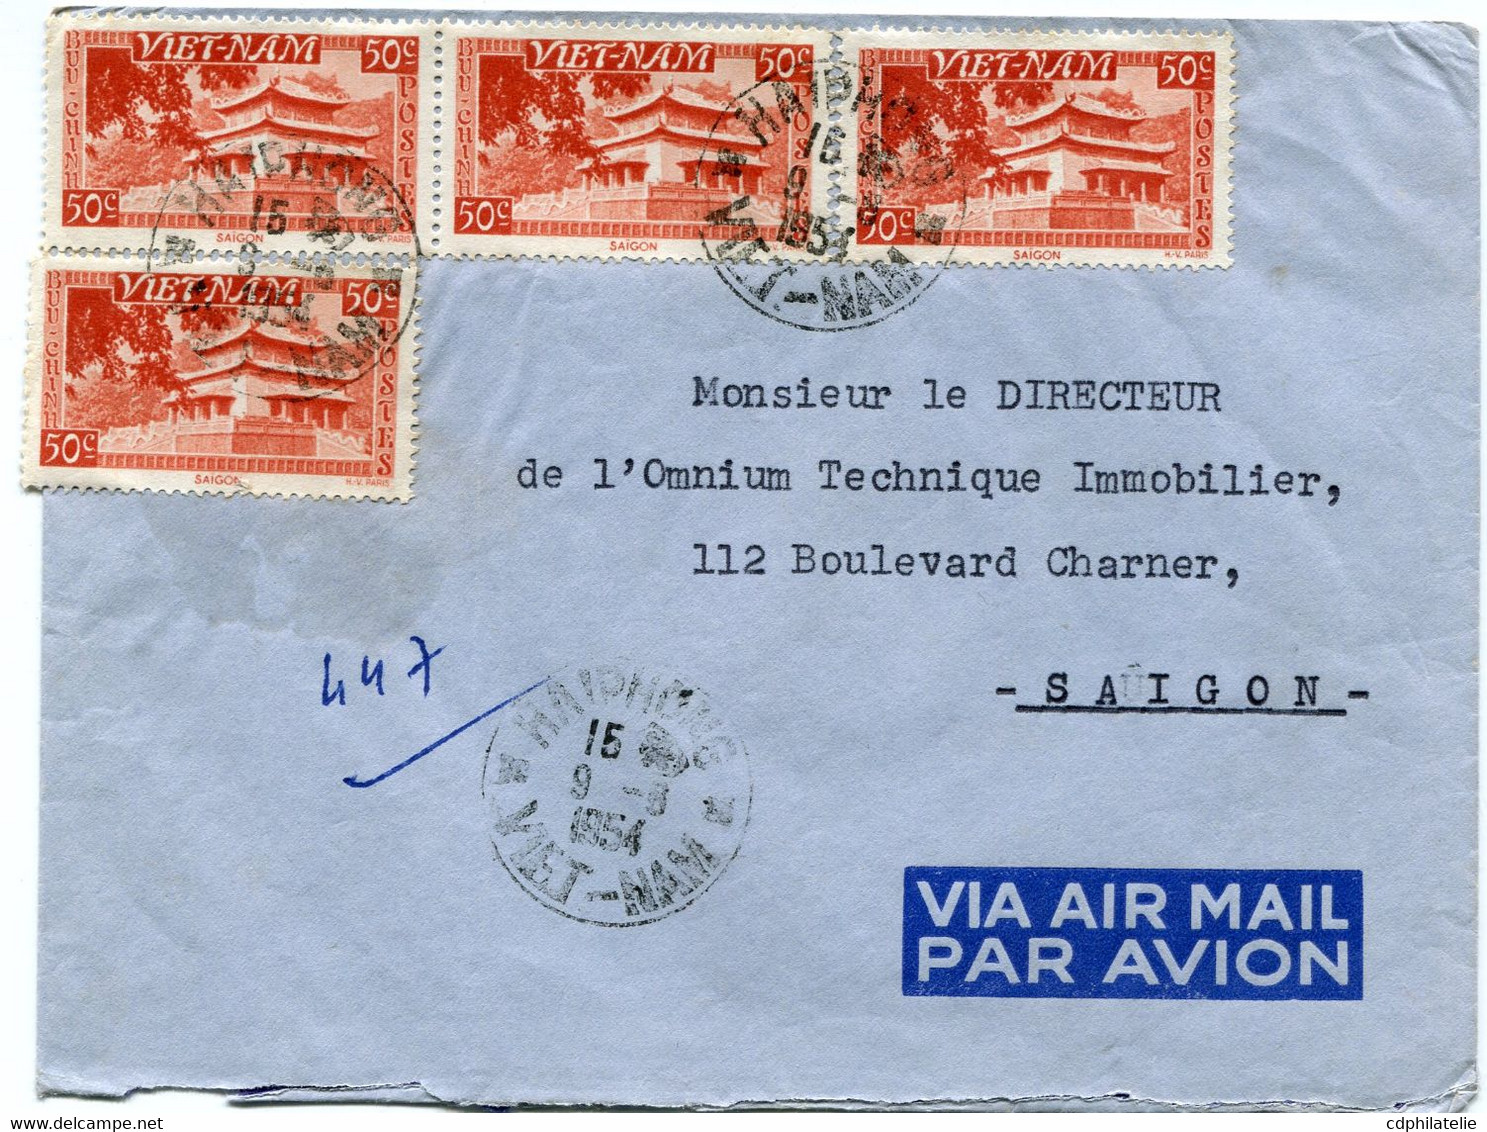 VIET-NAM LETTRE PAR AVION DEPART HAIPHONG 9-6-1954 VIET-NAM POUR LE VIET-NAM - Viêt-Nam